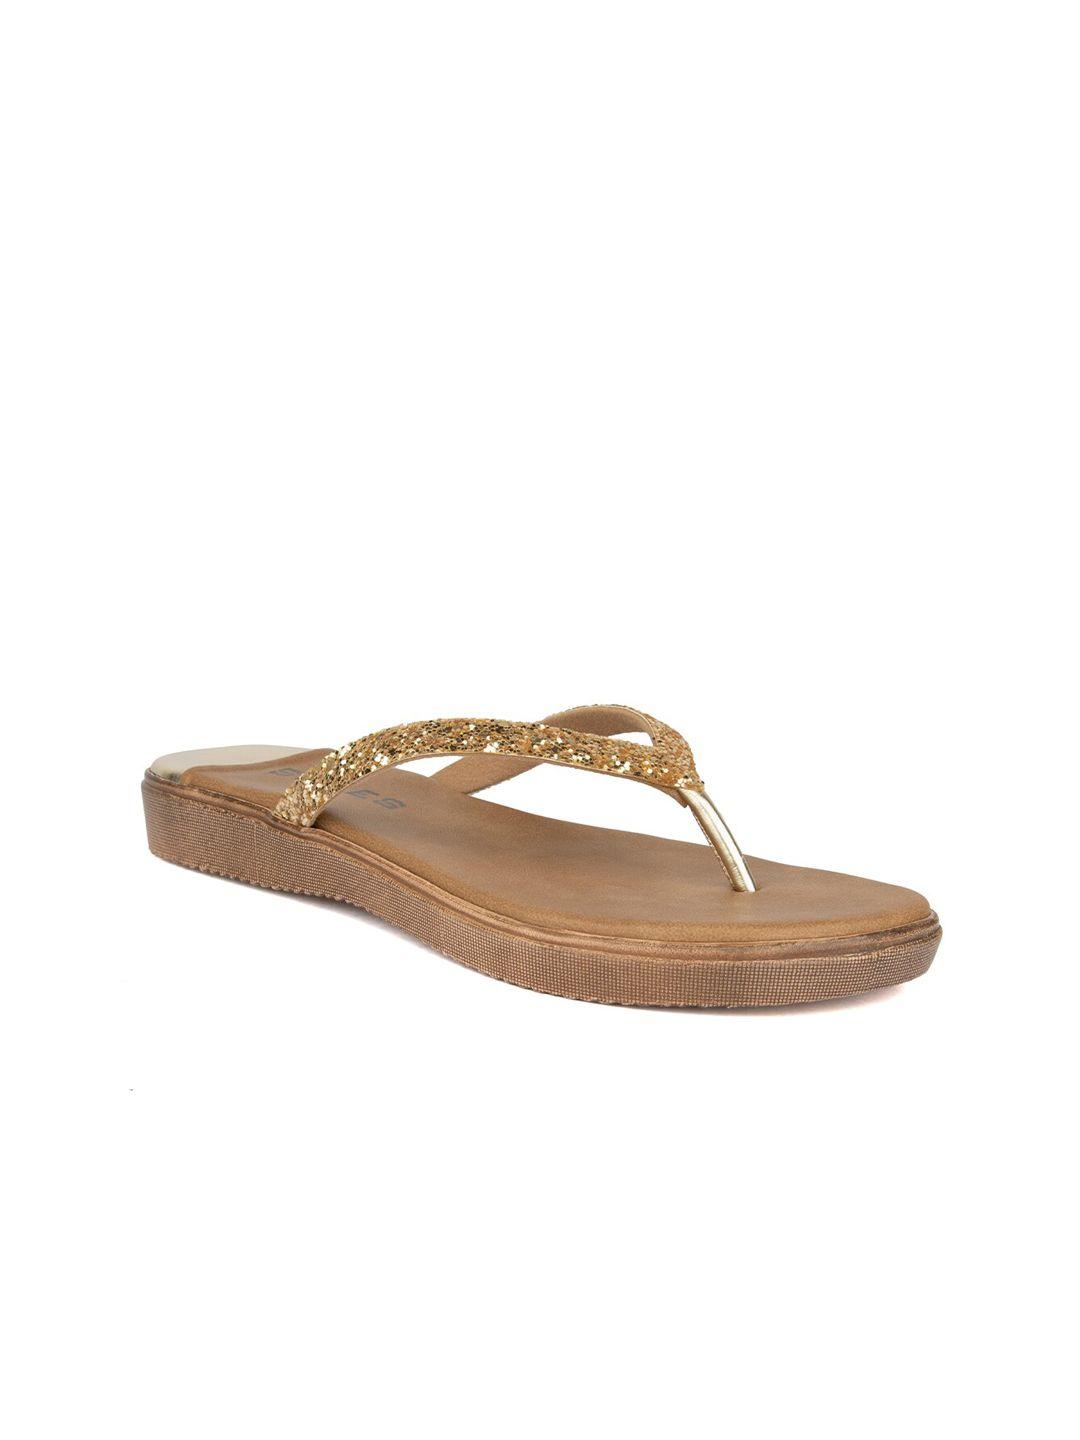 soles women gold-toned open toe flats